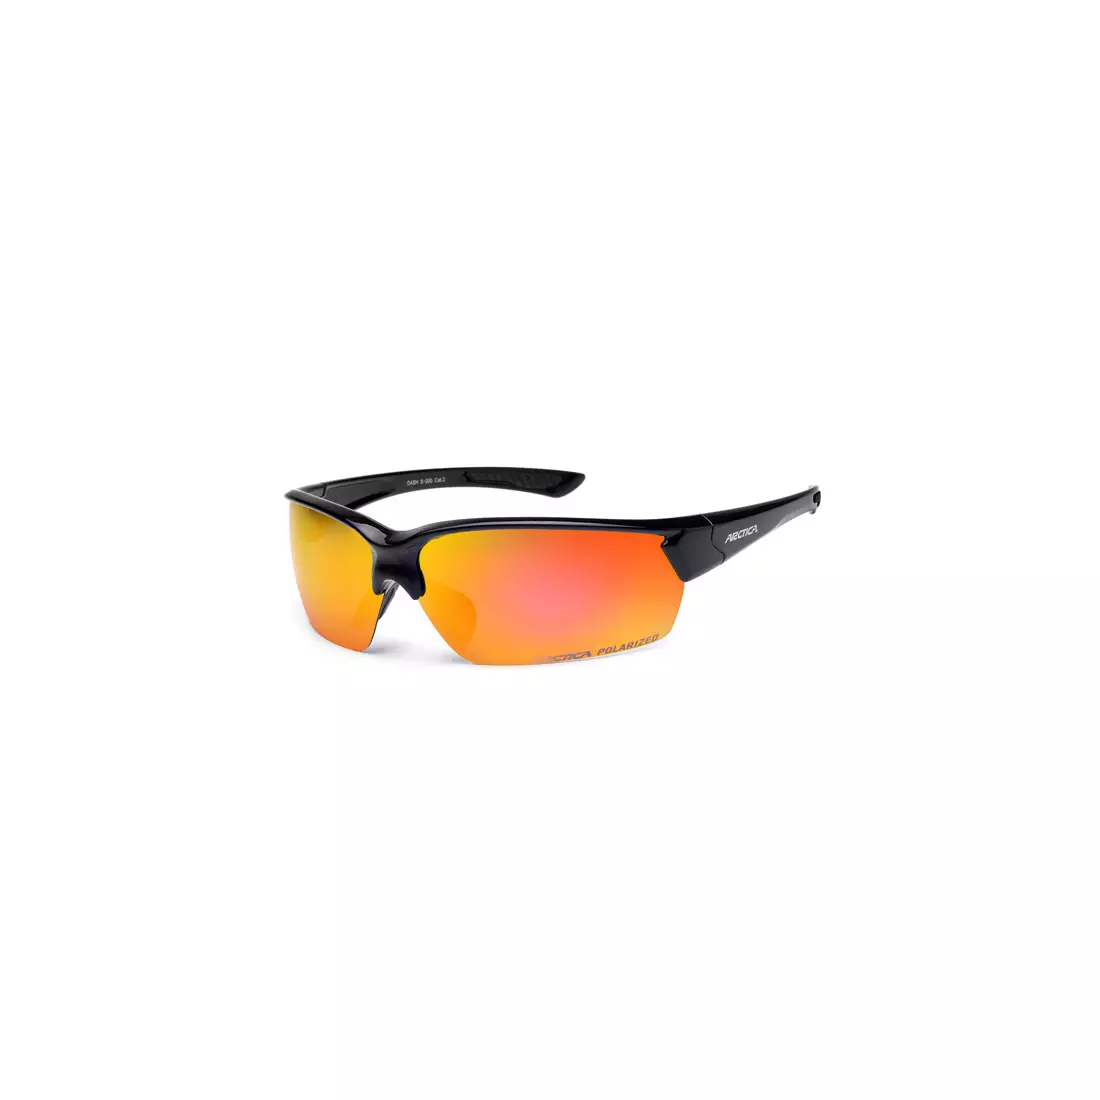 Cyklistické/sportovní brýle ARCTICA, S 200